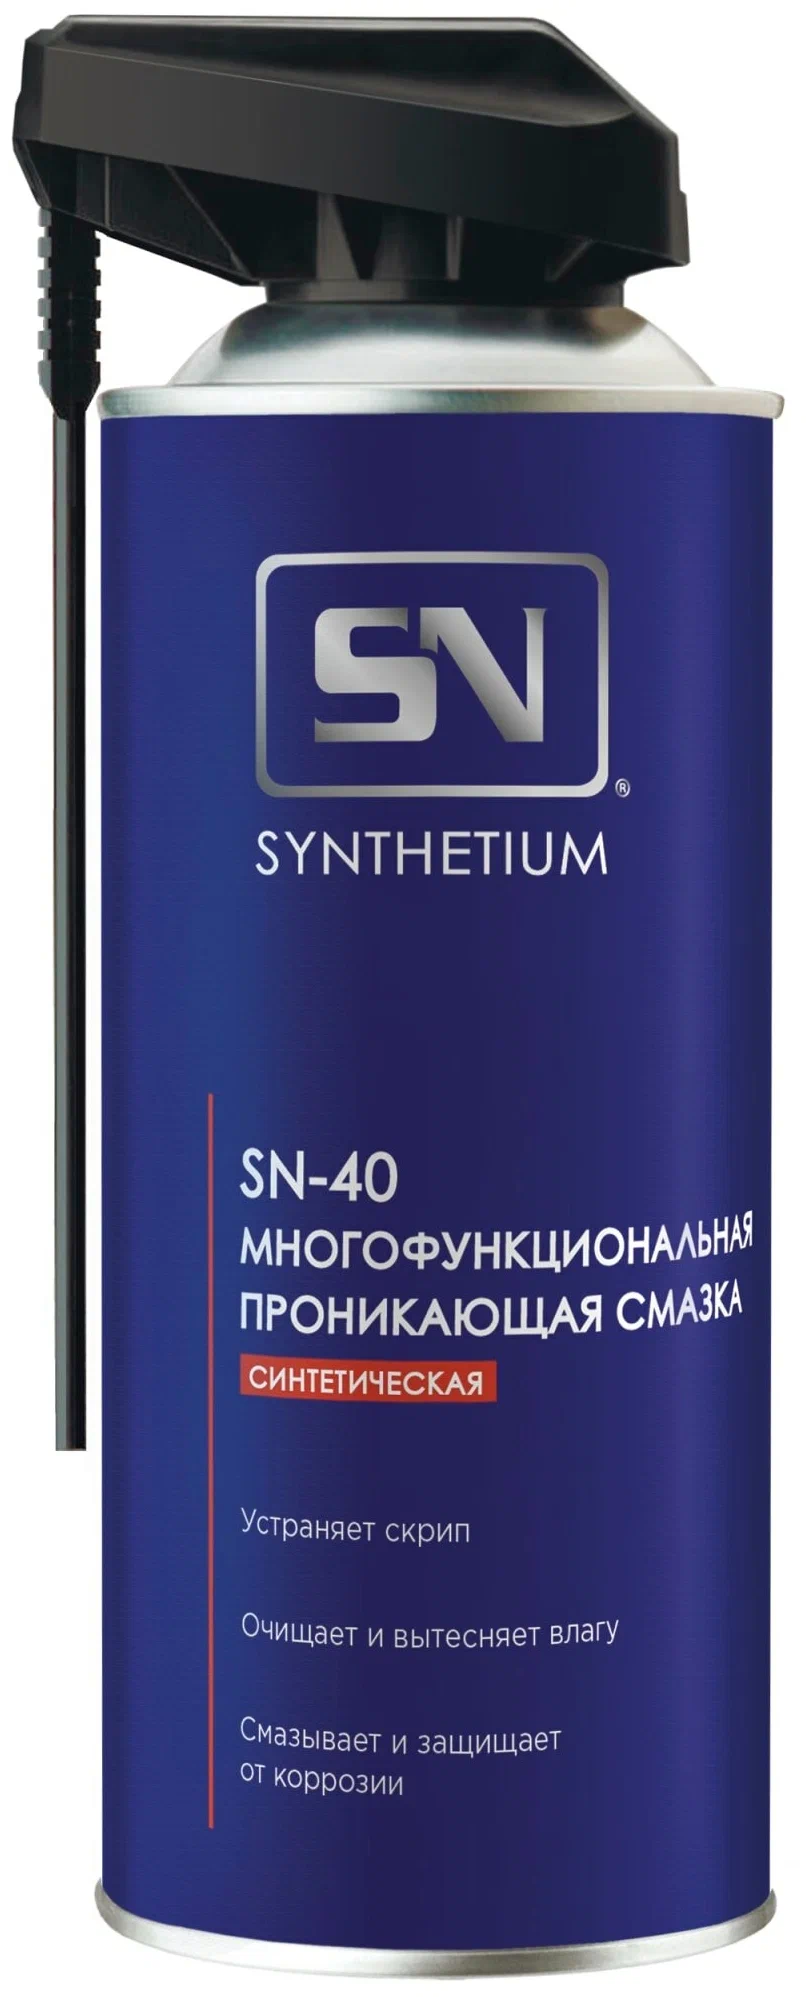 Synthetium SN-40